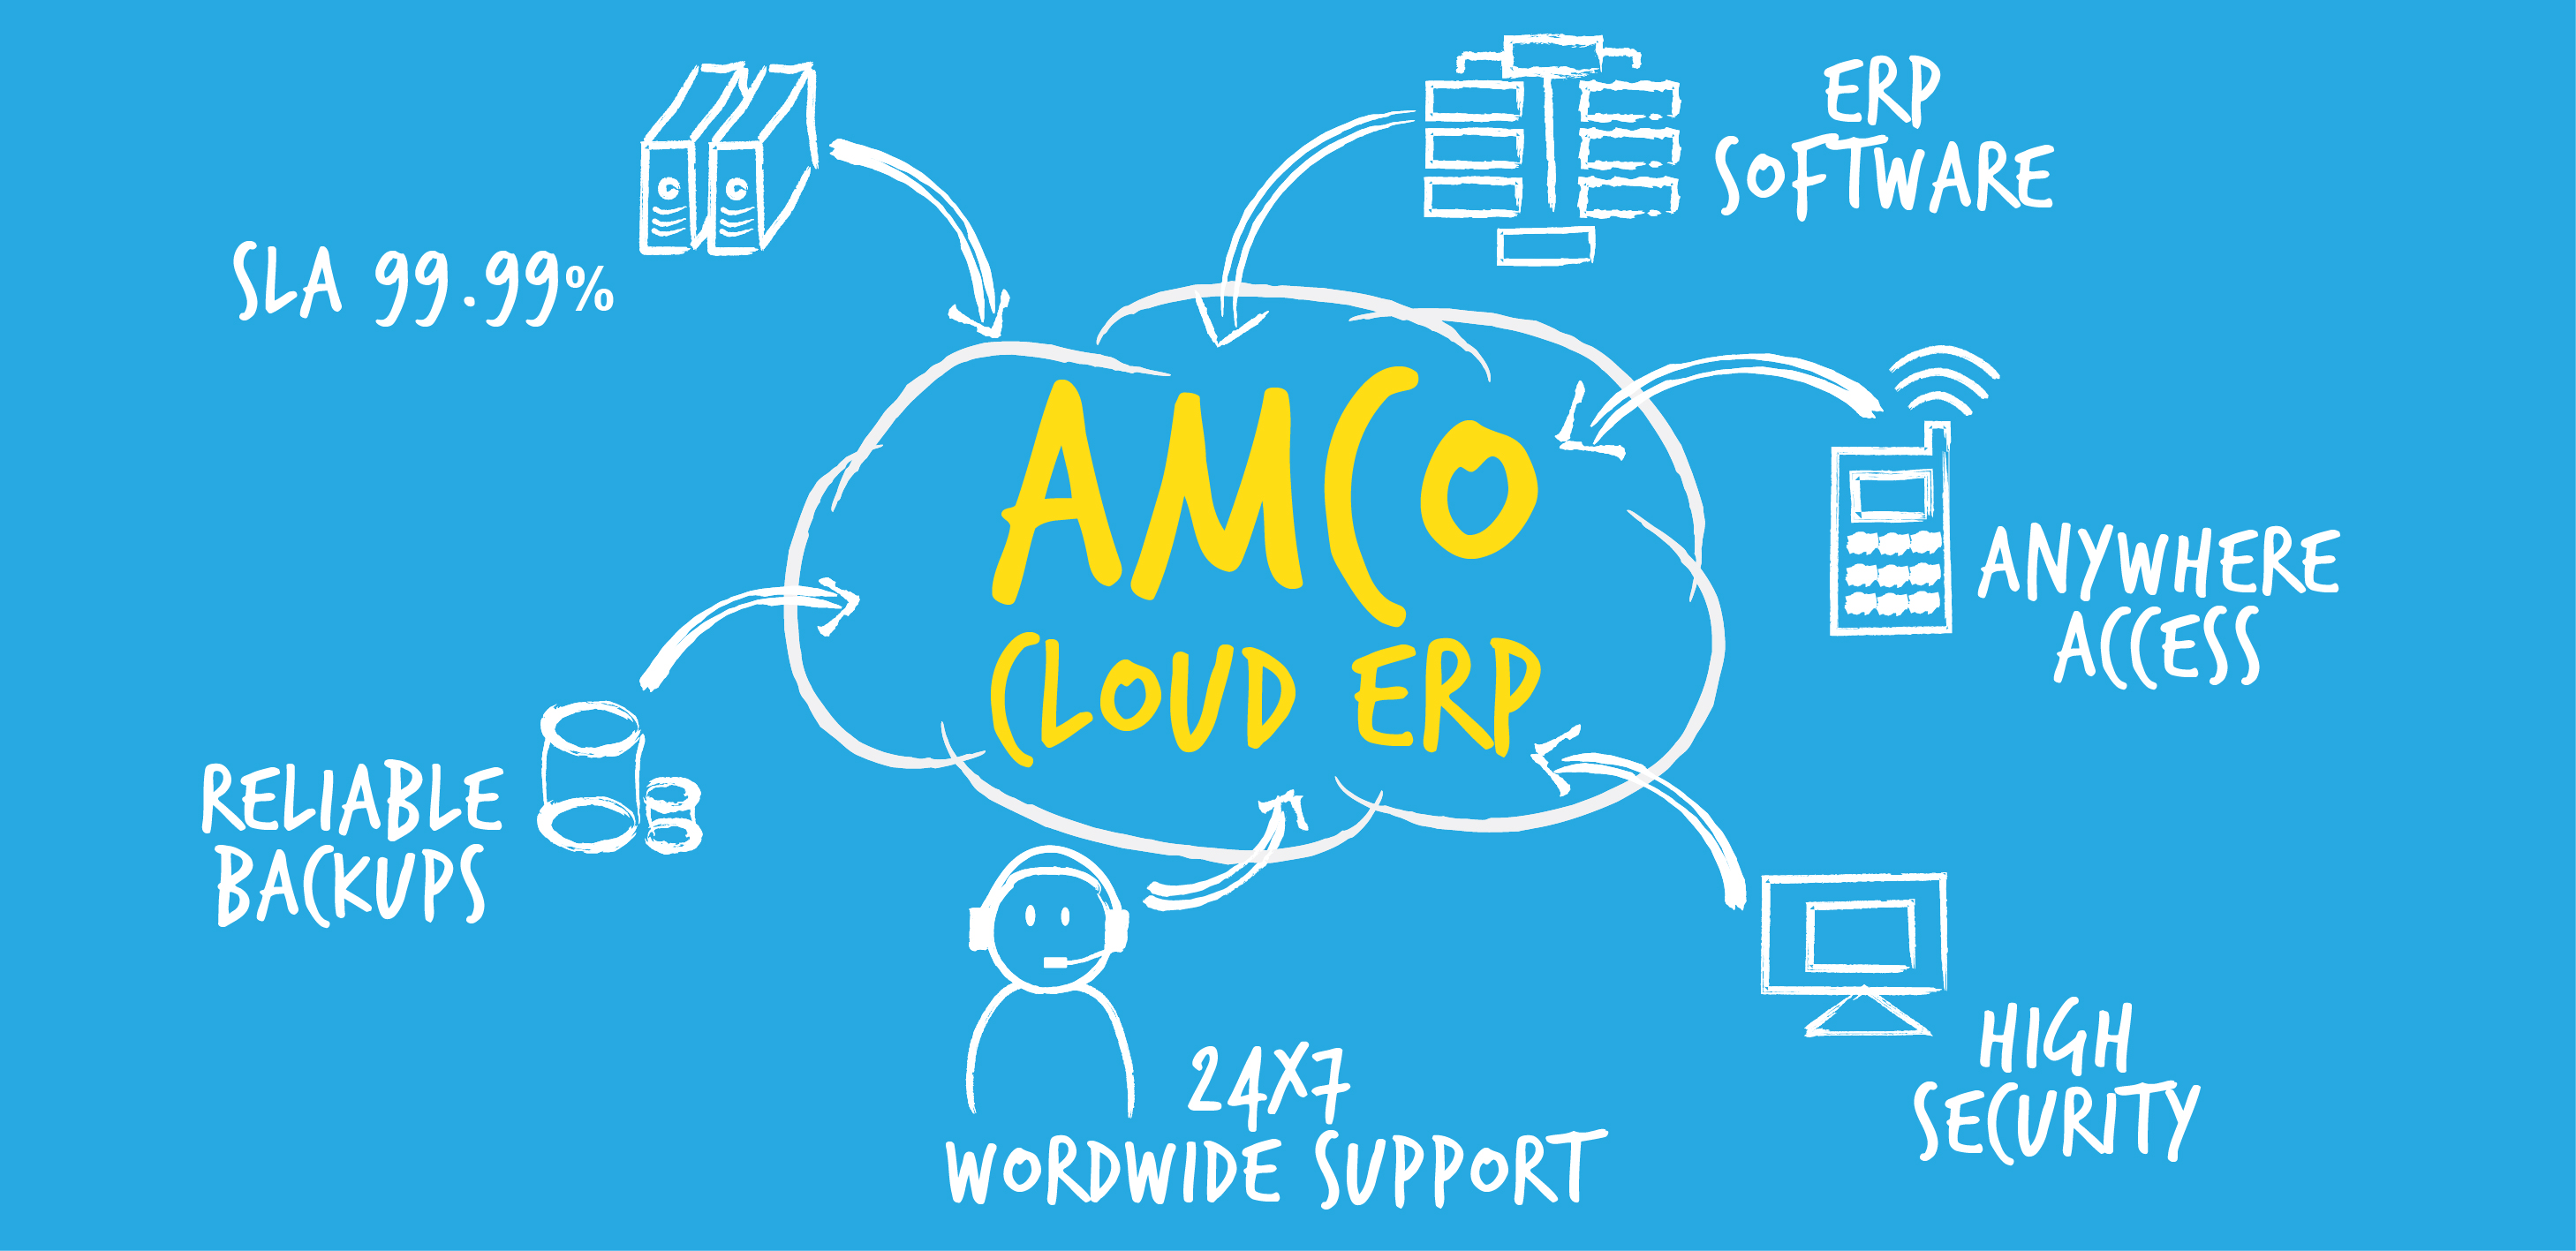 AMCO Cloud ERP